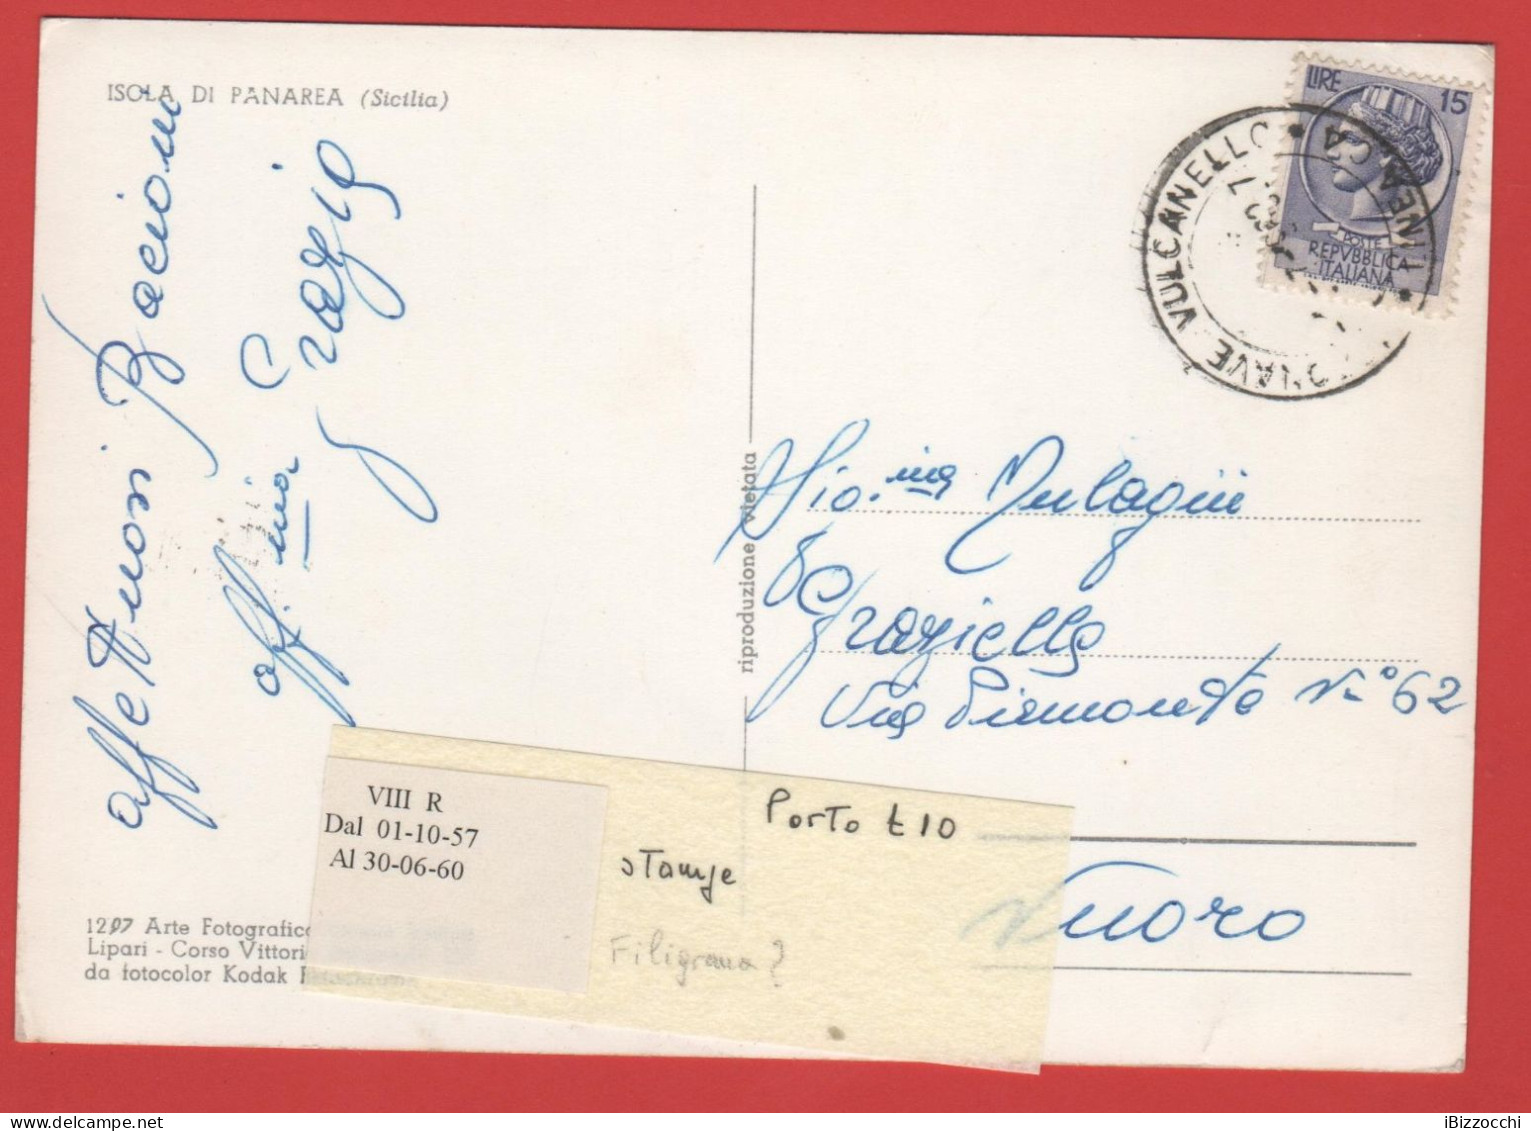 ITALIA - Storia Postale Repubblica - 1958 -  15 Antica Moneta Siracusana - Cartolina Dell'Isola Di Panarea  - Viaggiata - 1946-60: Poststempel